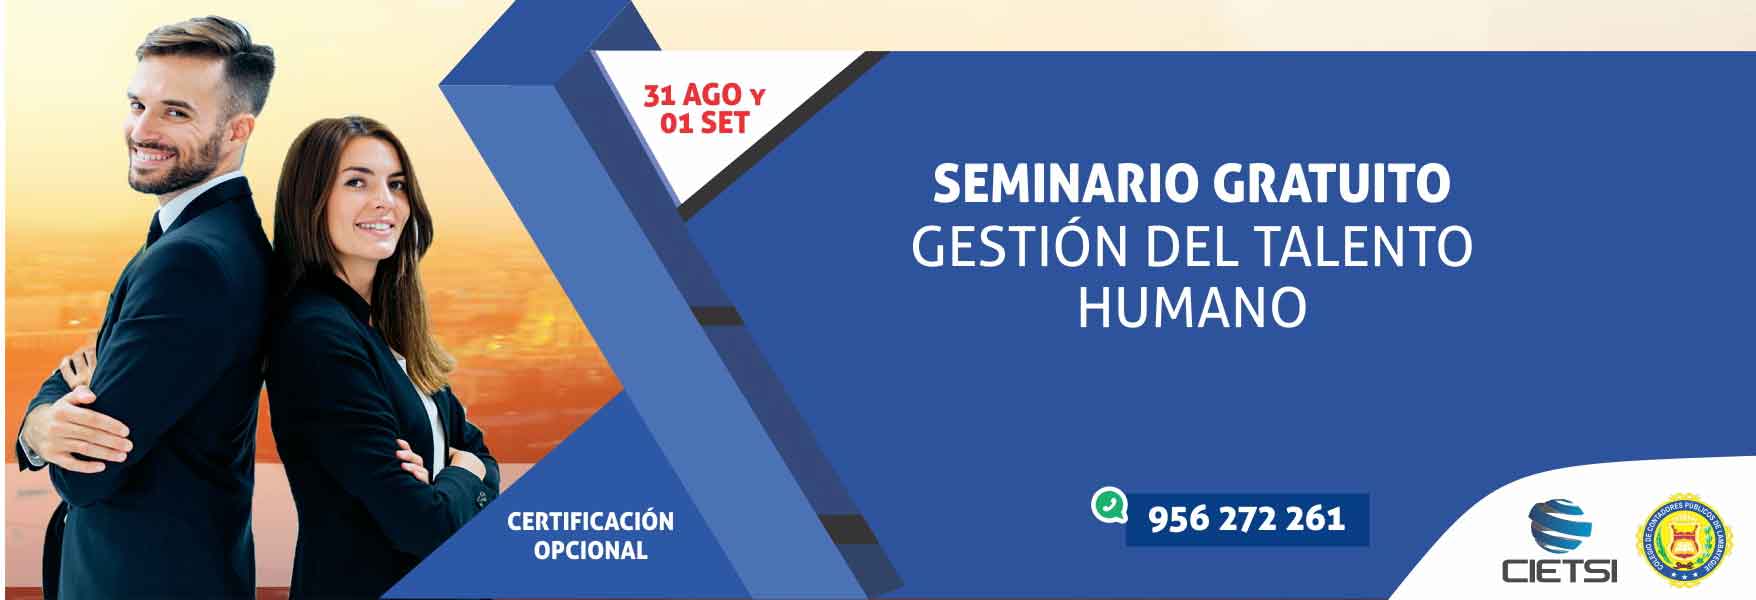 seminario gratuito gestiOn del talento humano 2018